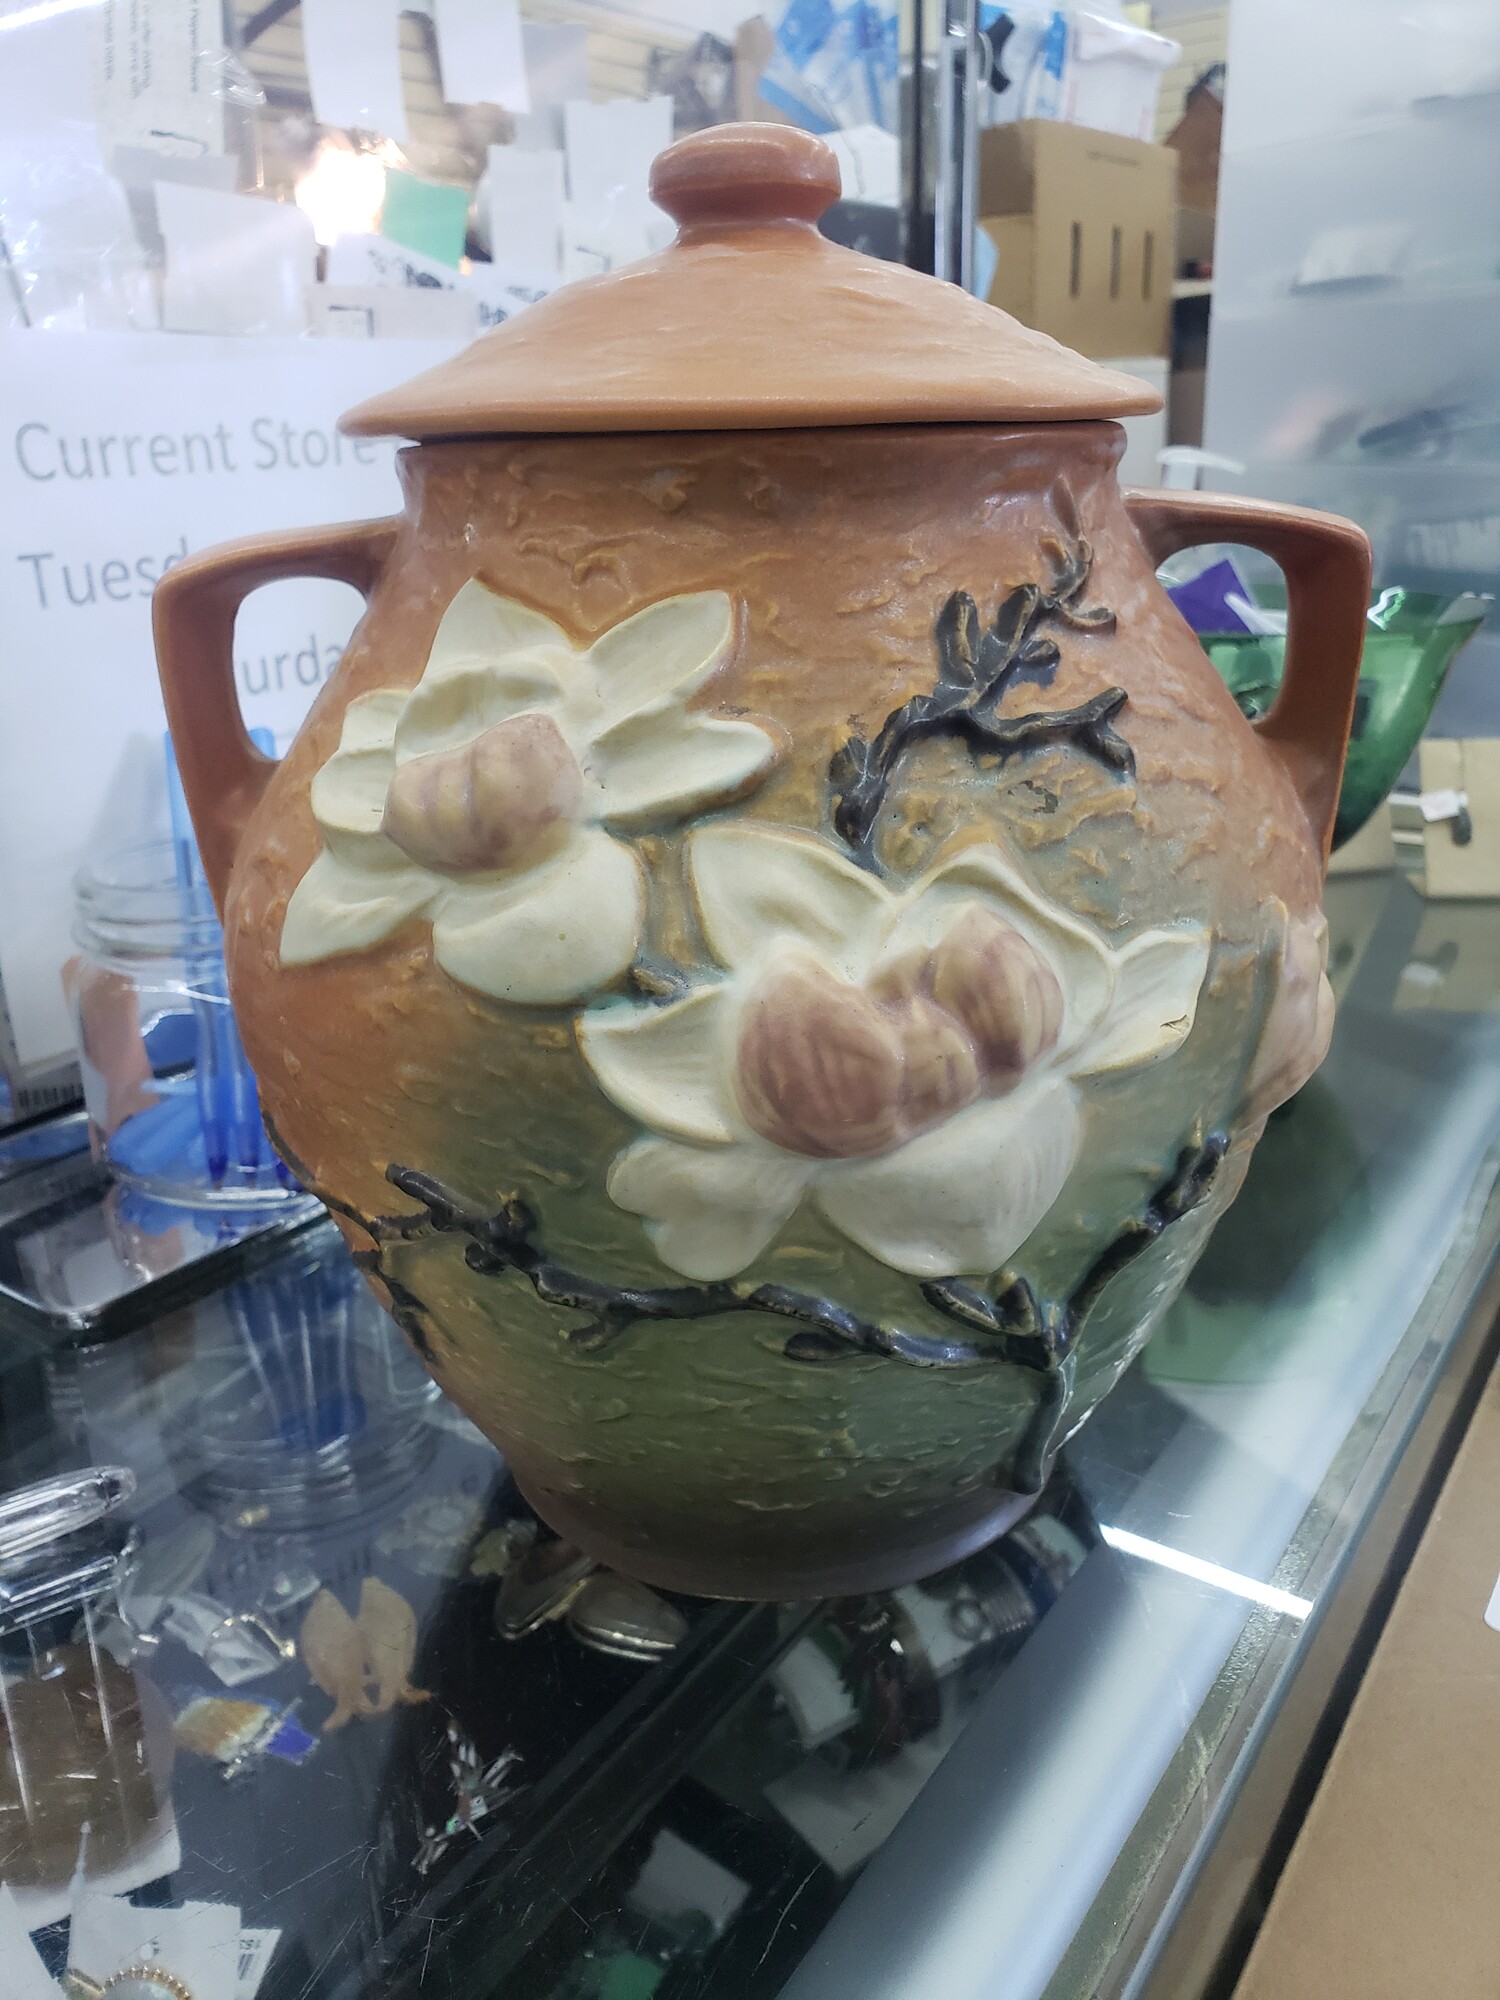 Roseville Cookie Jar, Magnolia, Size: W/ Lid